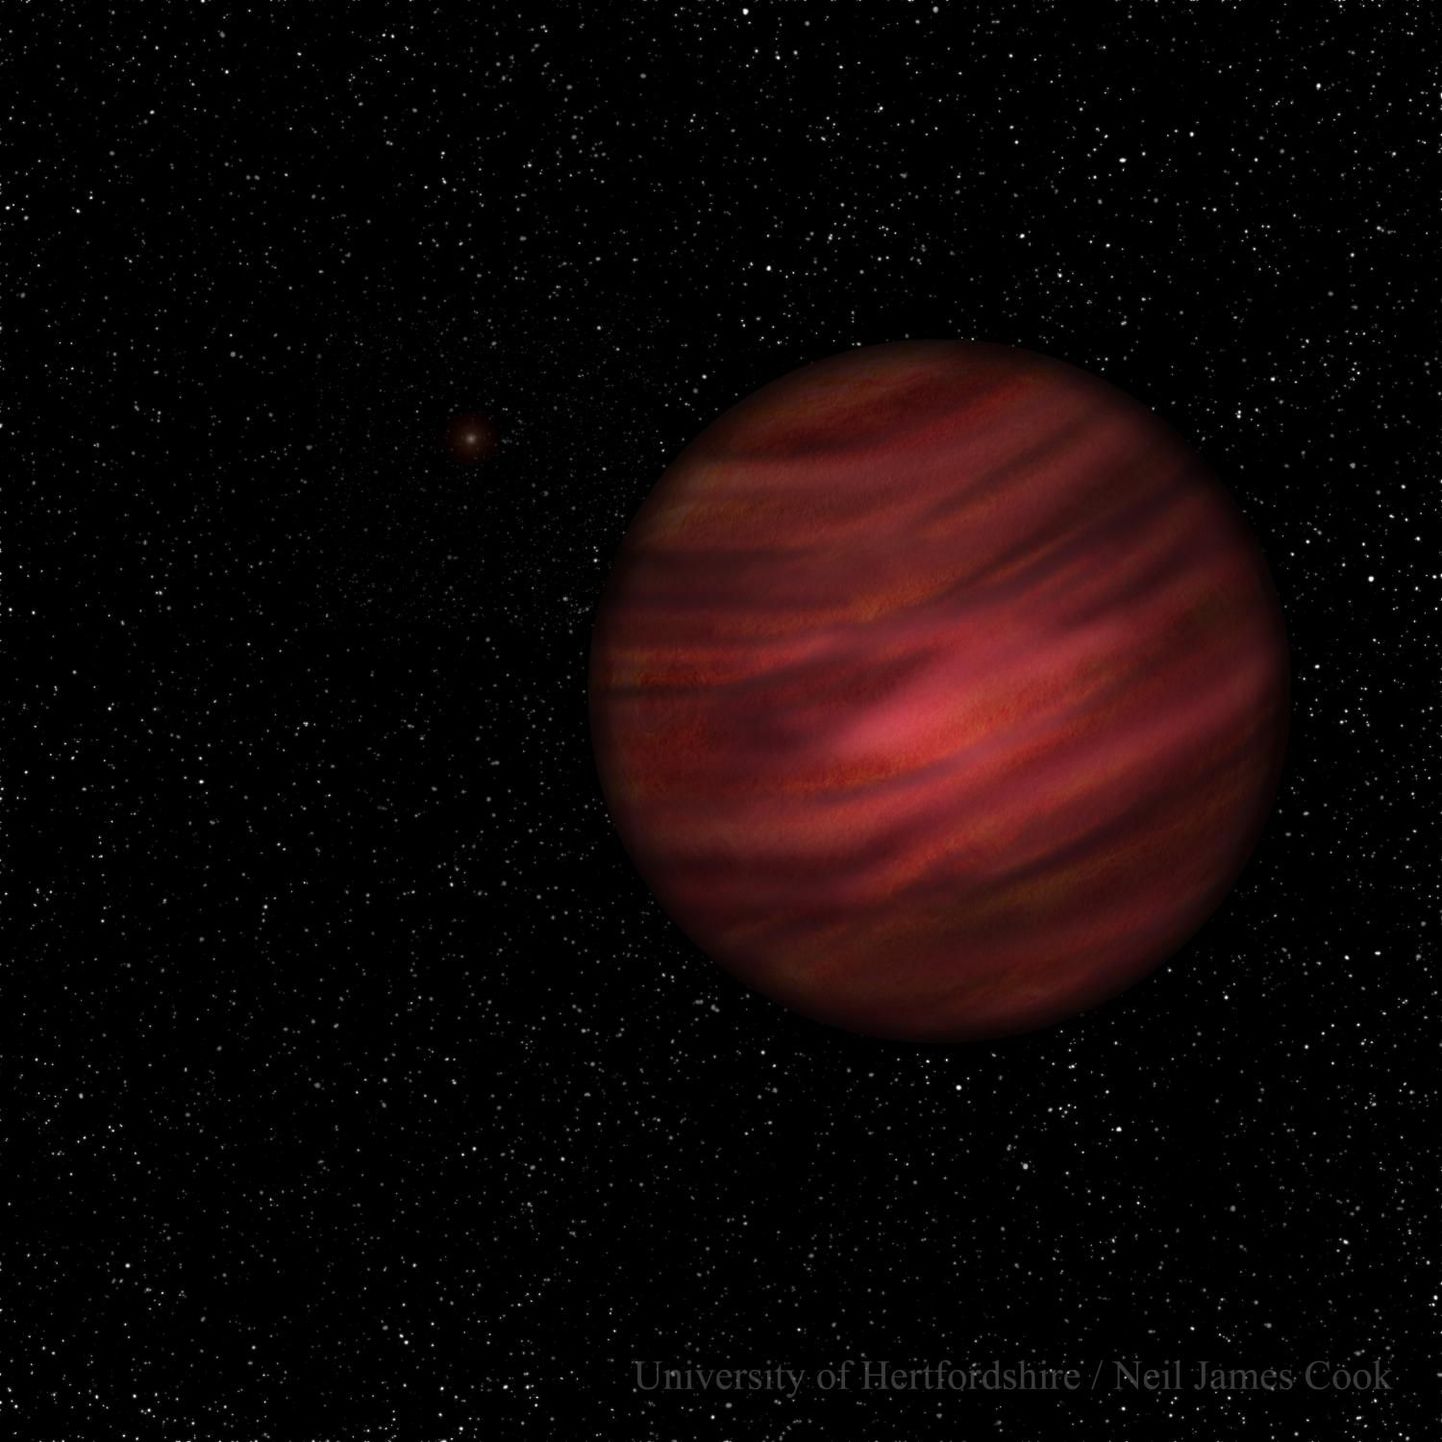 Kunstniku loodud pilt vabalt hõljuvast planeedist 2MASS J2126.